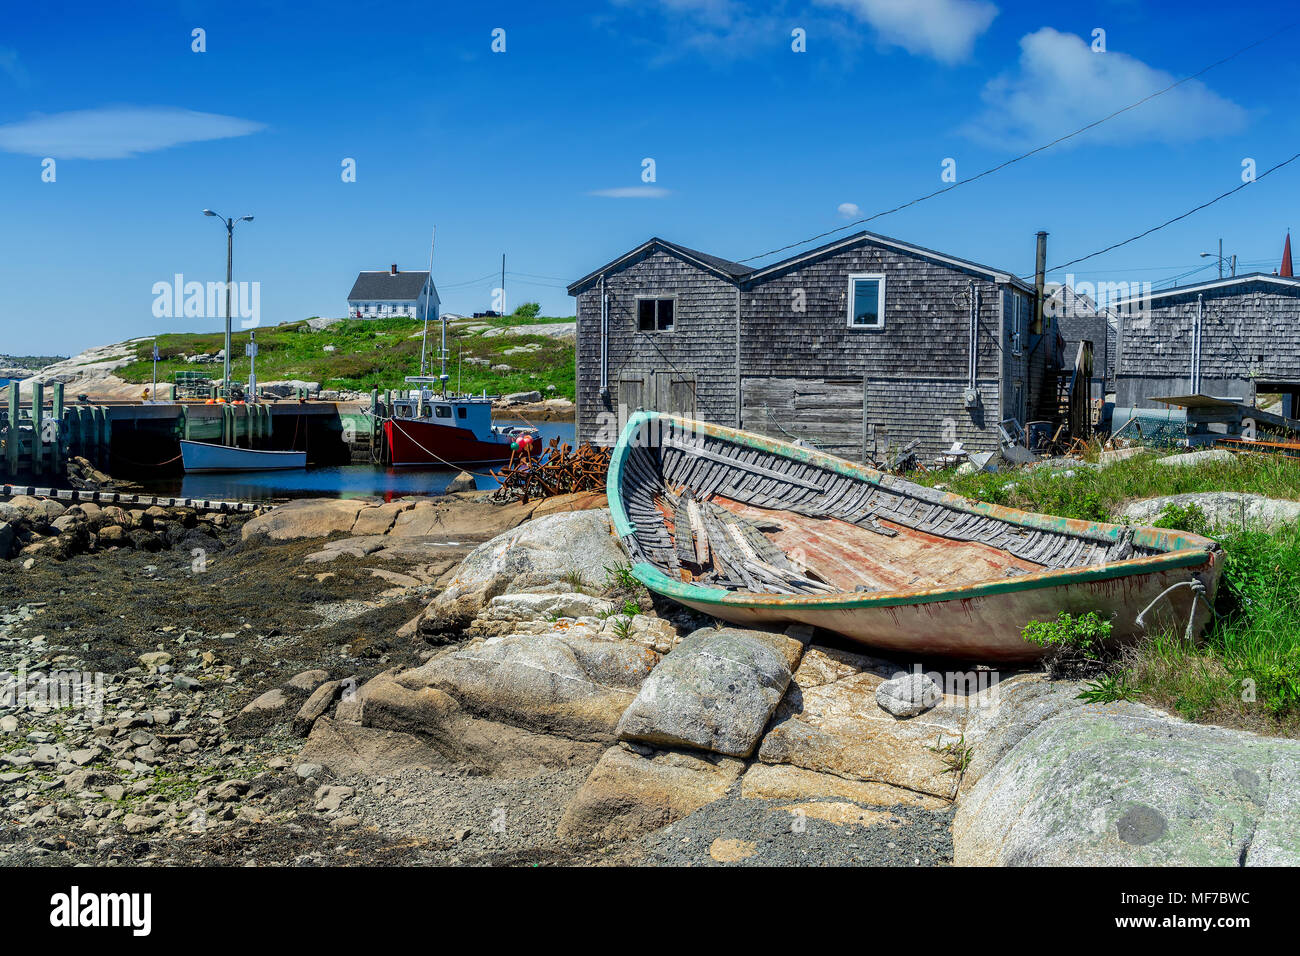 Il villaggio di pescatori di Peggy's Cove nella rurale Nova Scotia. Foto Stock